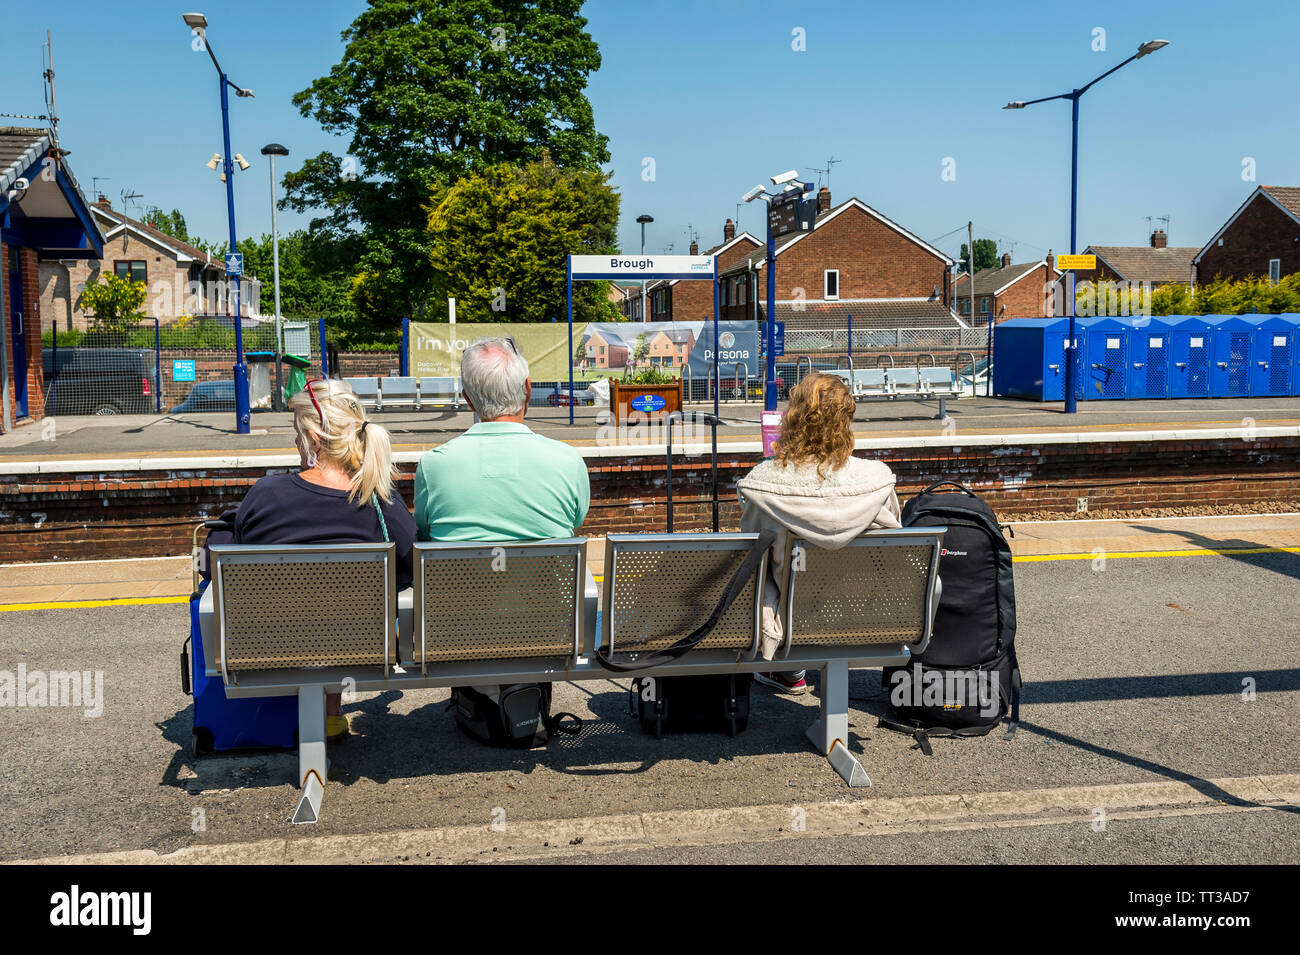 Personnes en attente d'un train à Brough gare, Yorkshire, Angleterre. Banque D'Images